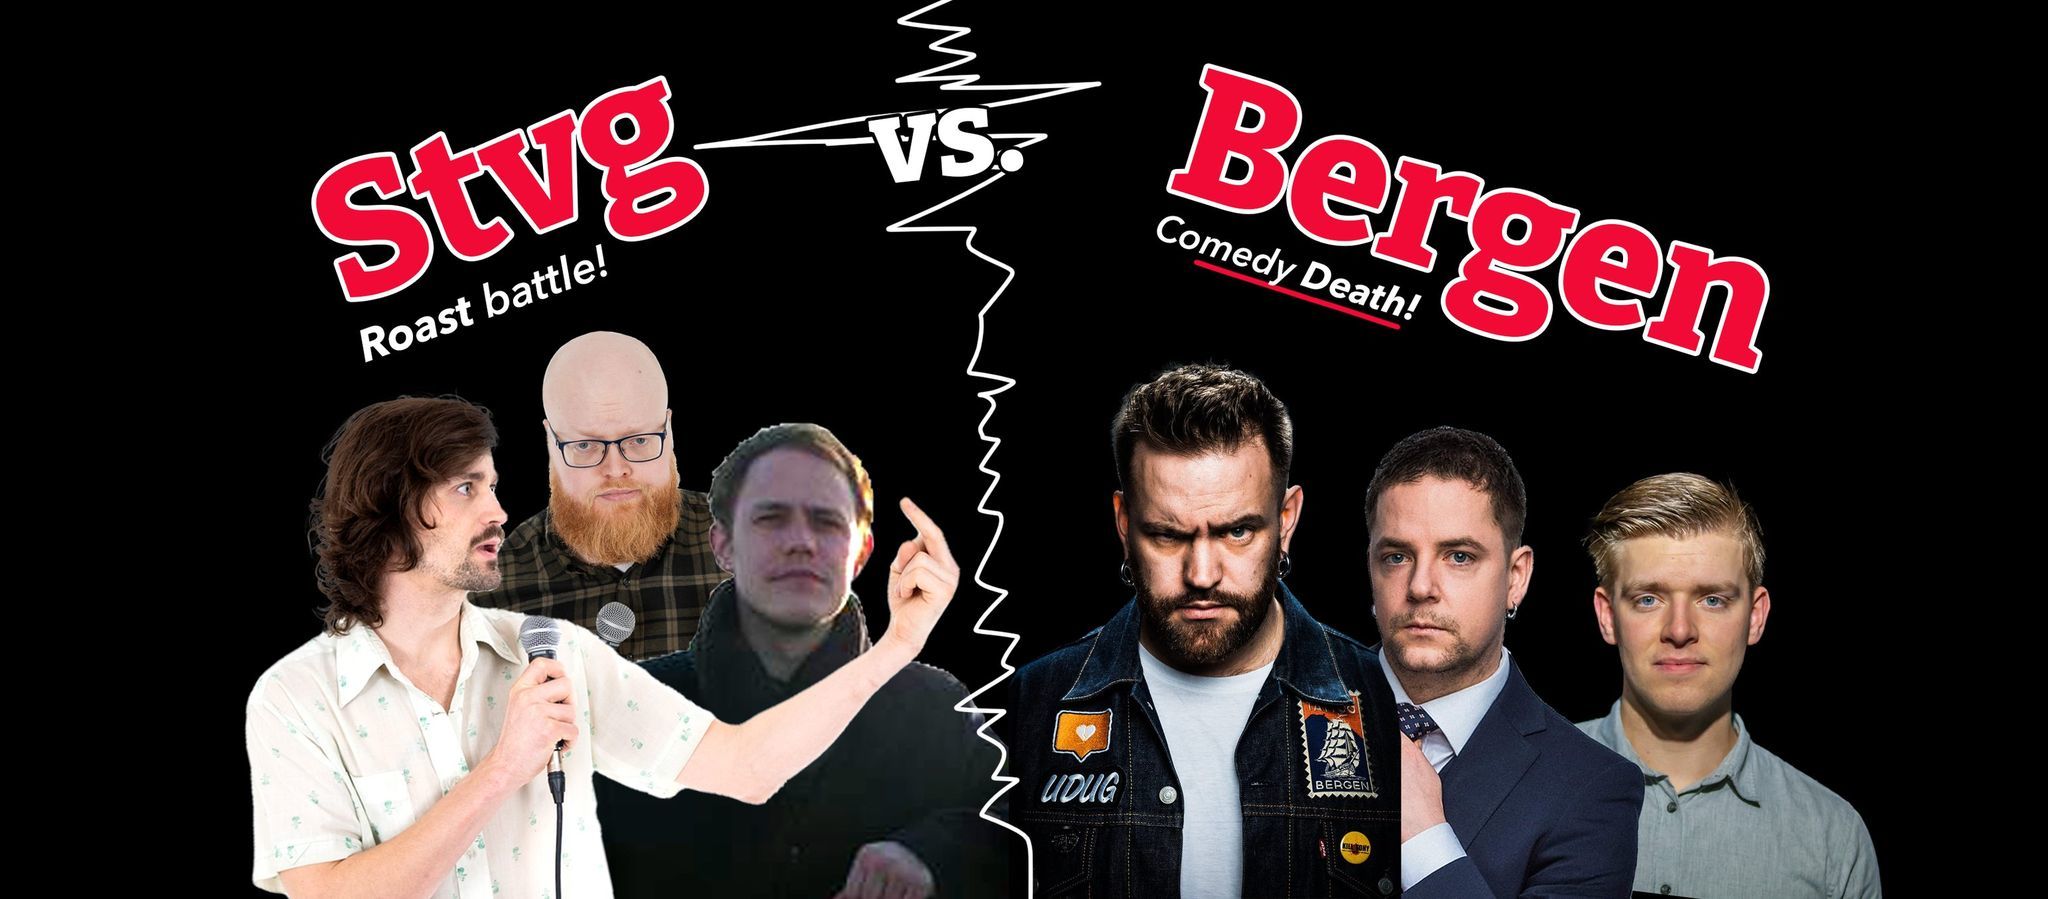 Stvg vs. Bergen | Roast Battle